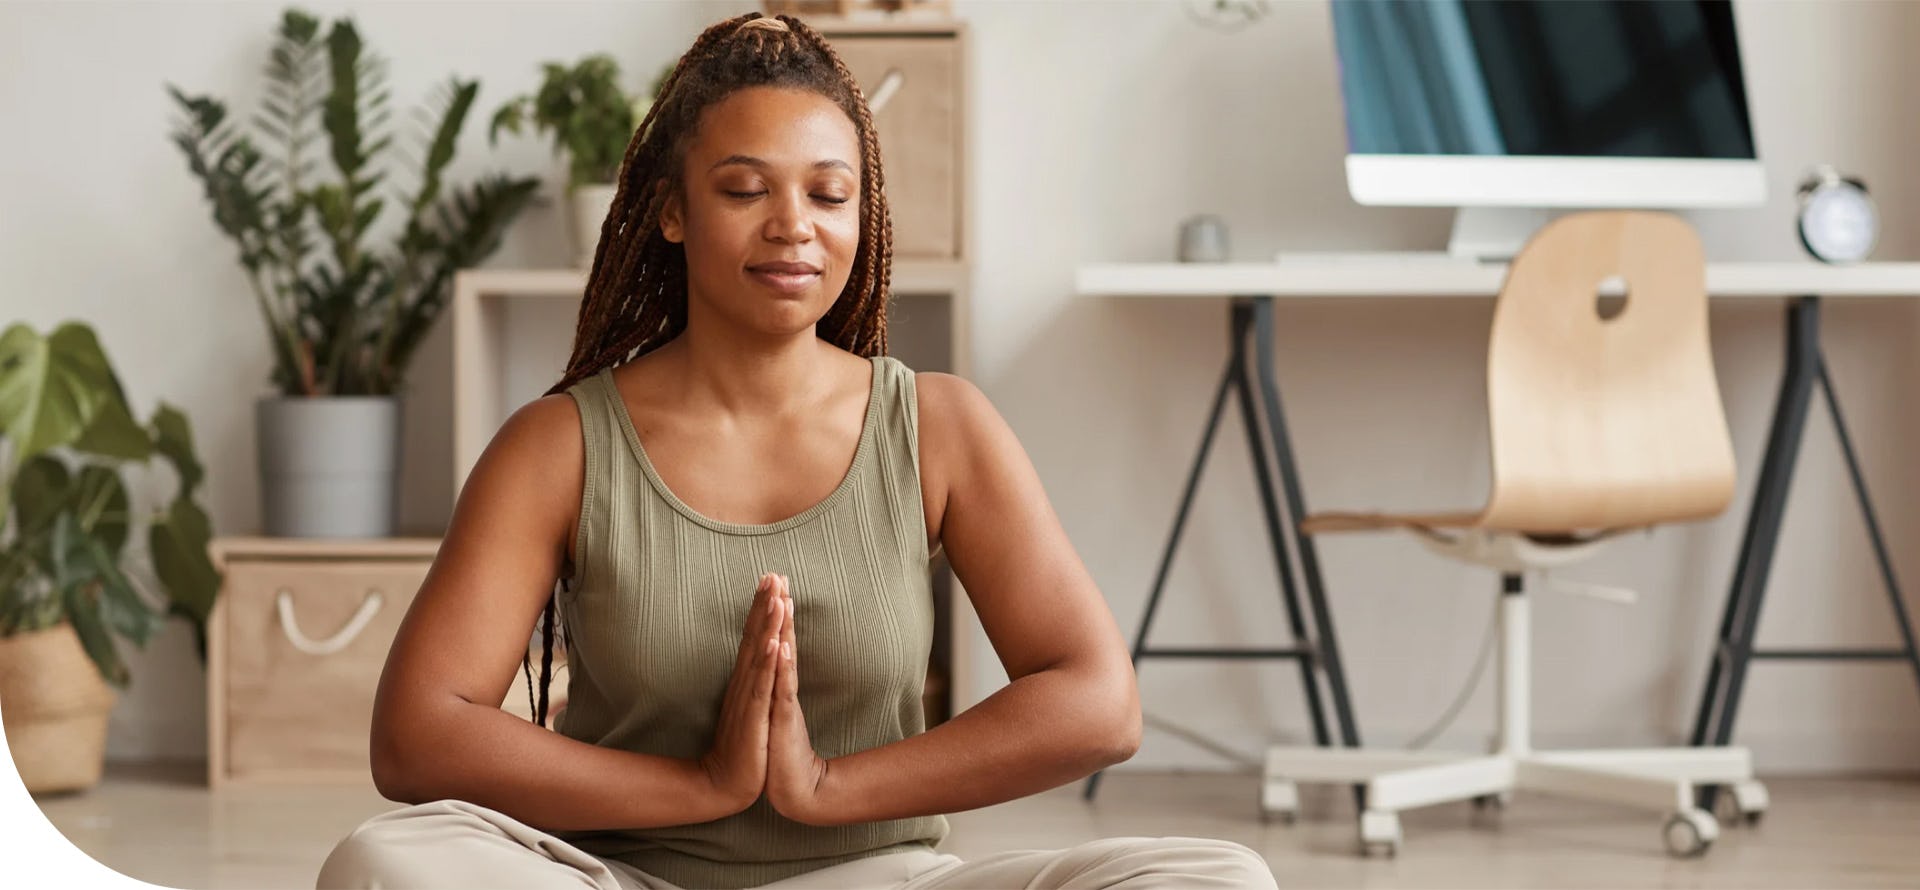 O que é yoga? Confira os benefícios dessa prática